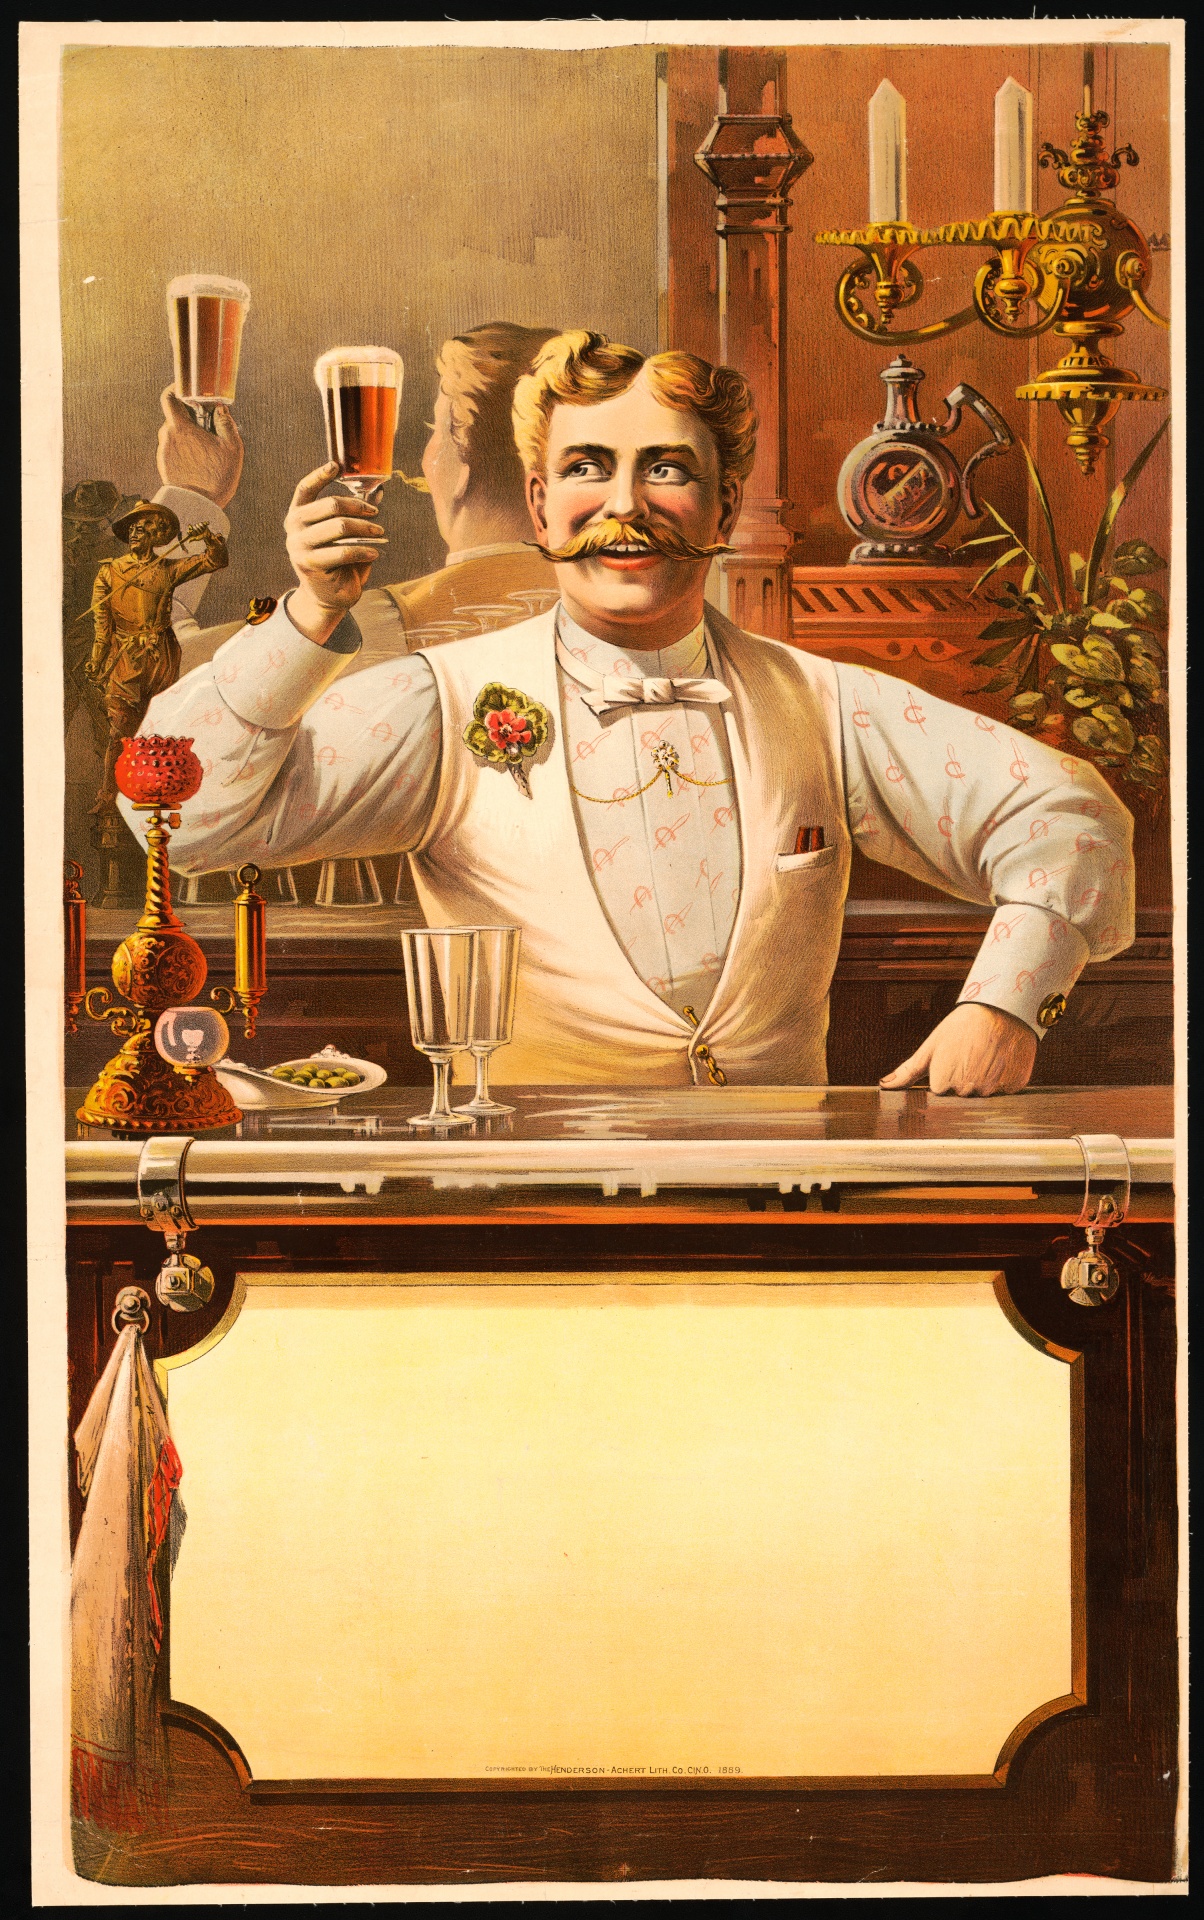 Bartender Vintage Poster